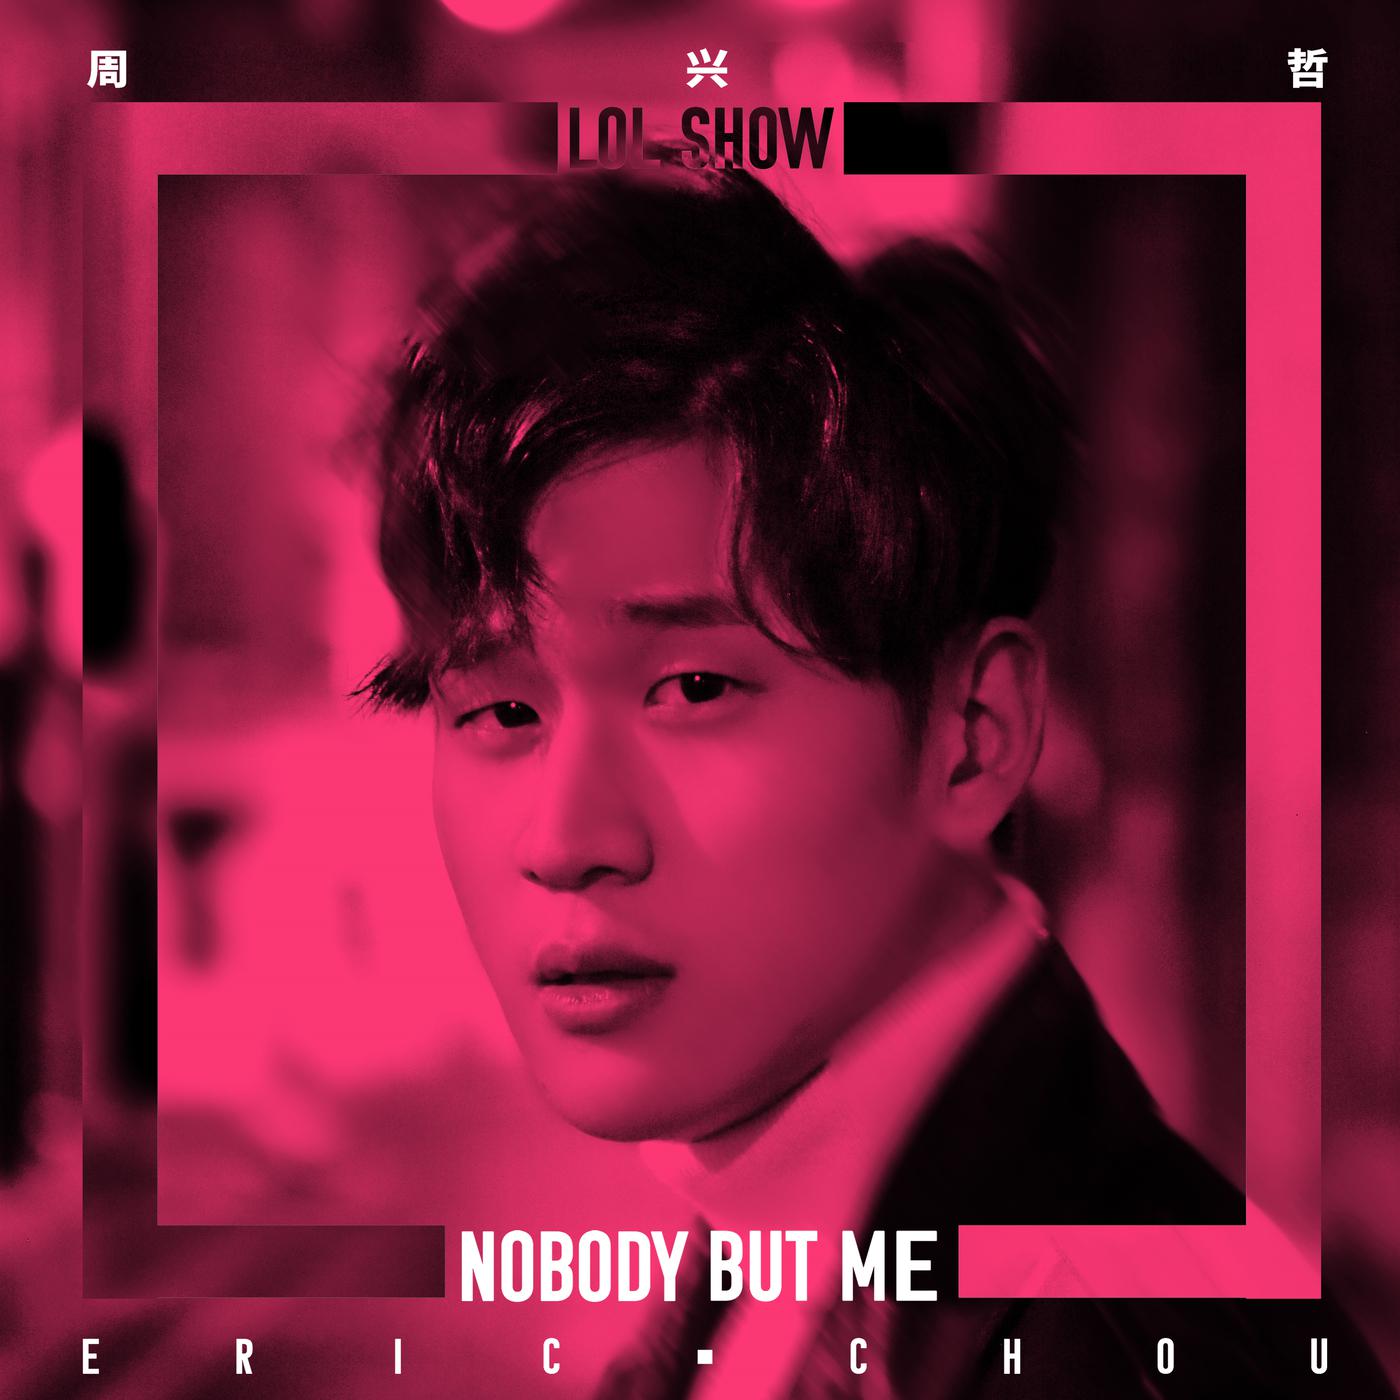 周兴哲 - Nobody But Me (LOL 音乐节特别版)